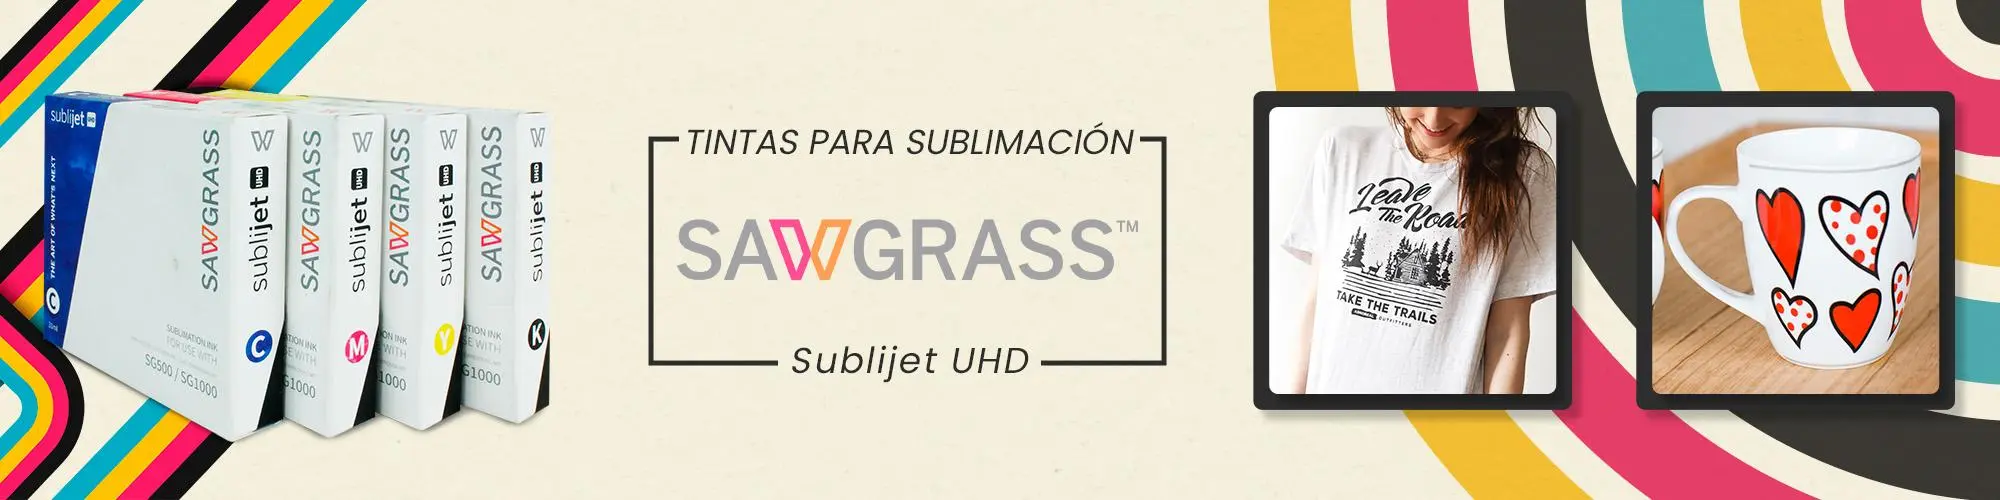 tintas para sublimación sawgrass